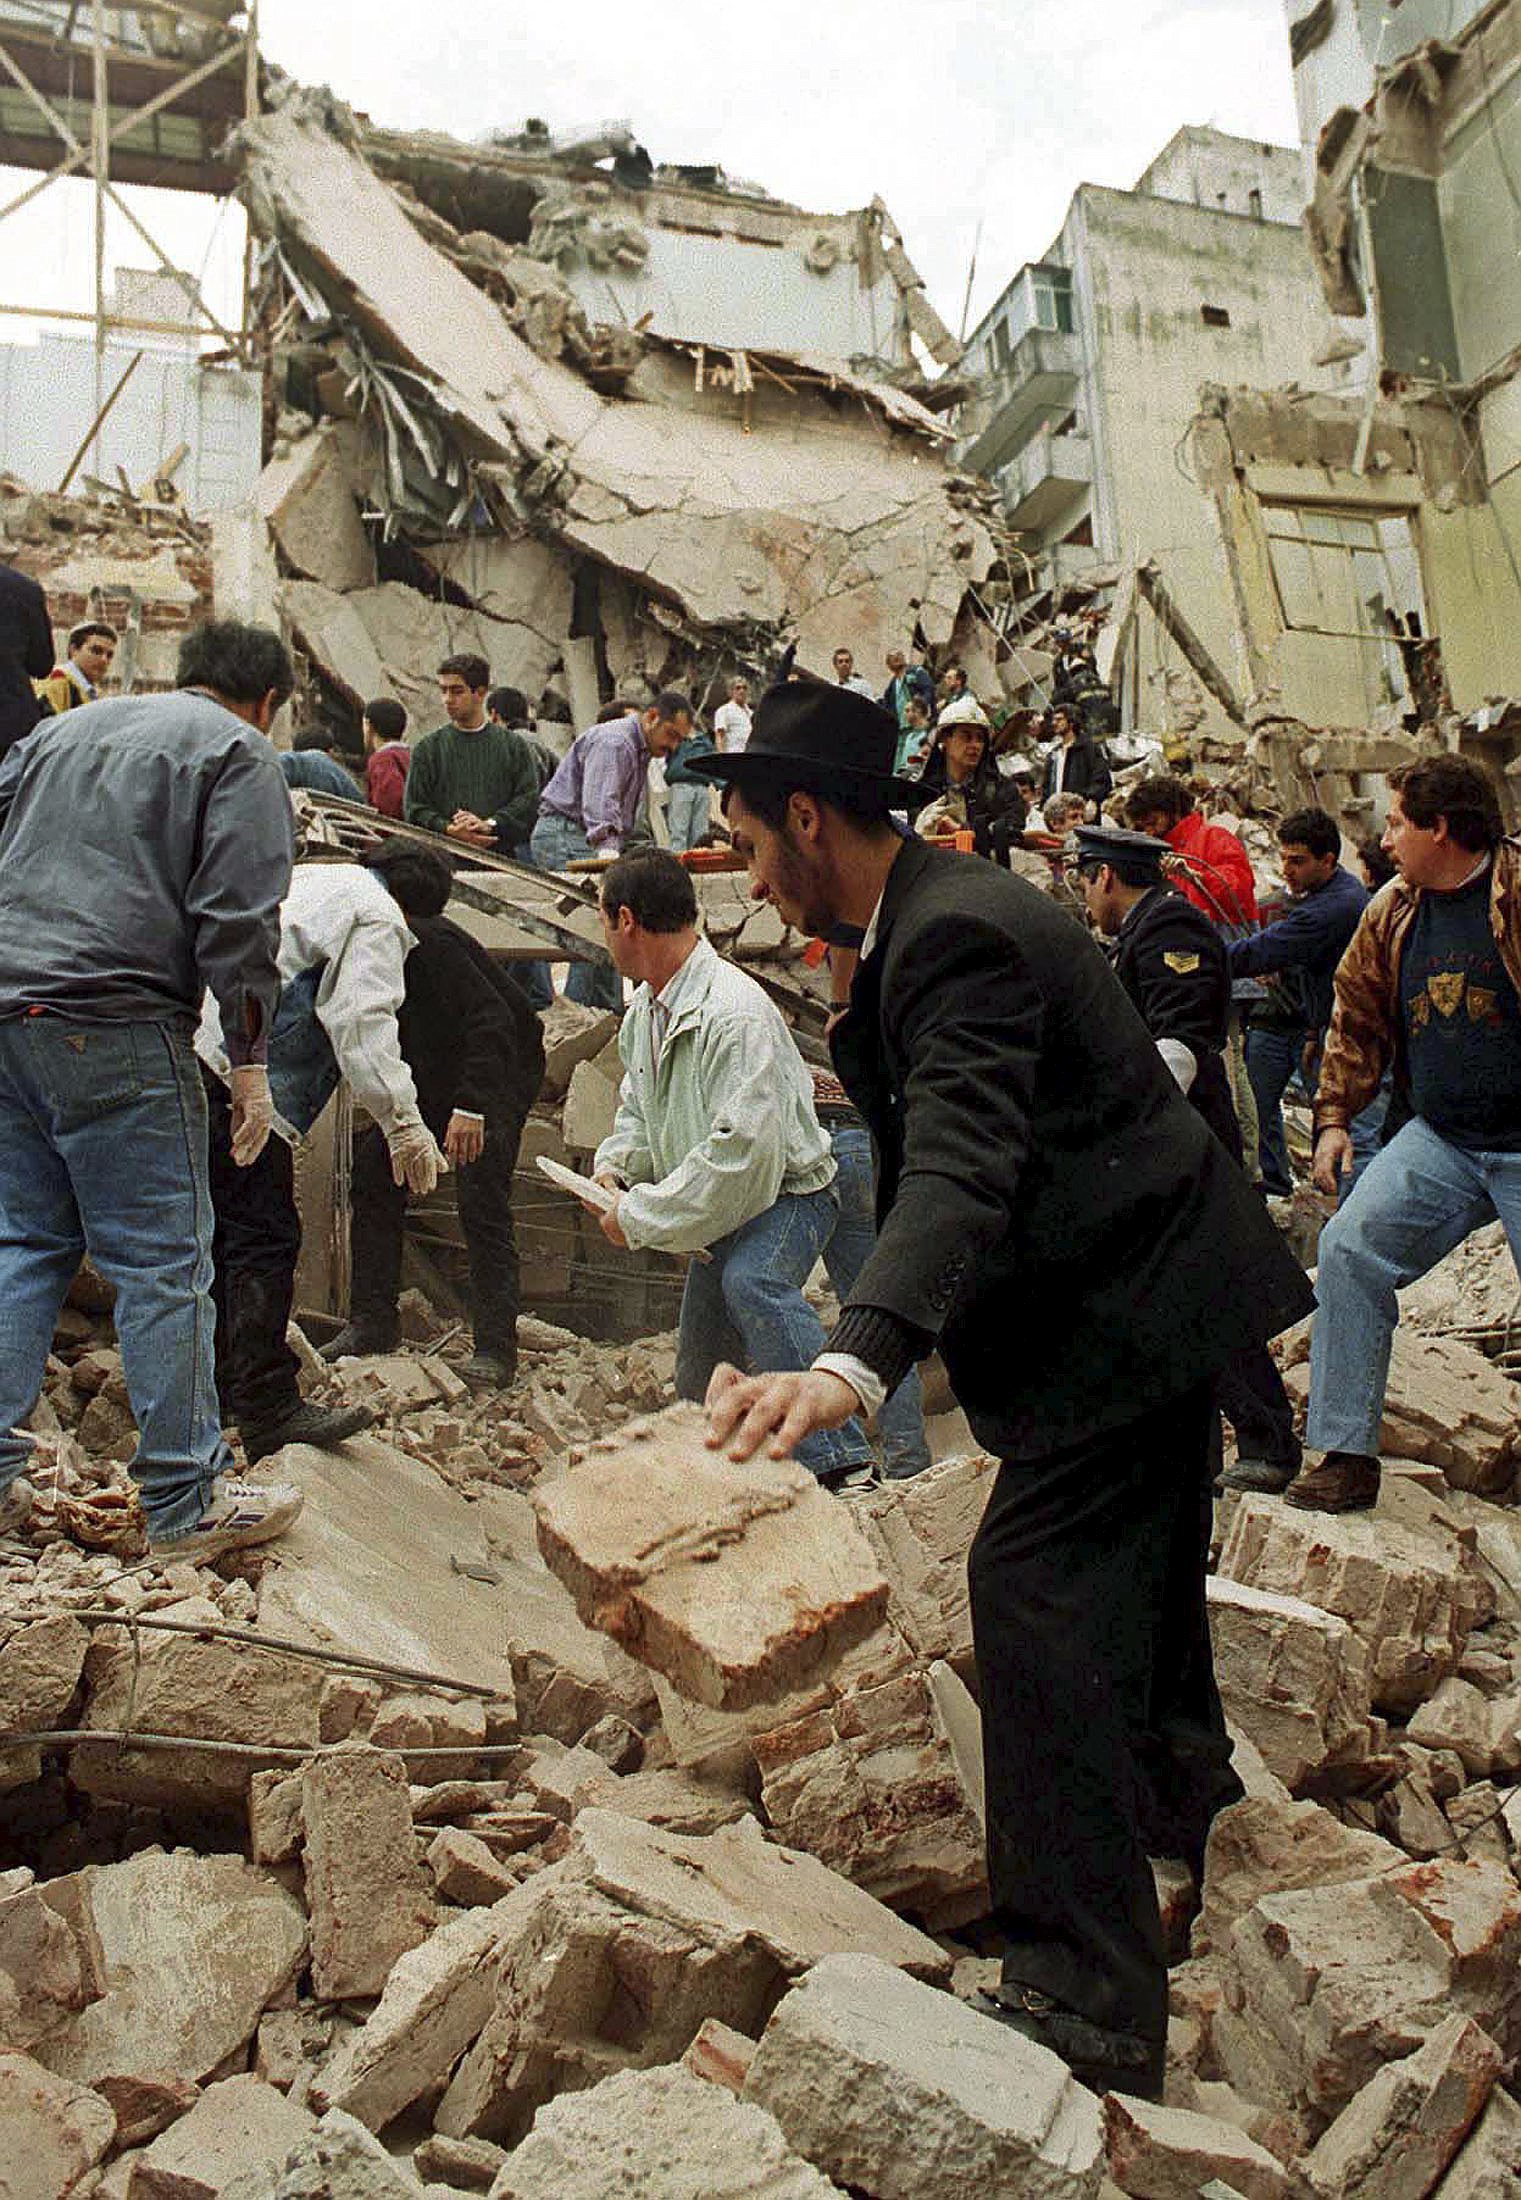 Varias personas buscan supervivientes entre los escombros de la sede de la AMIA en Argentina, el 18 de julio de 1994.